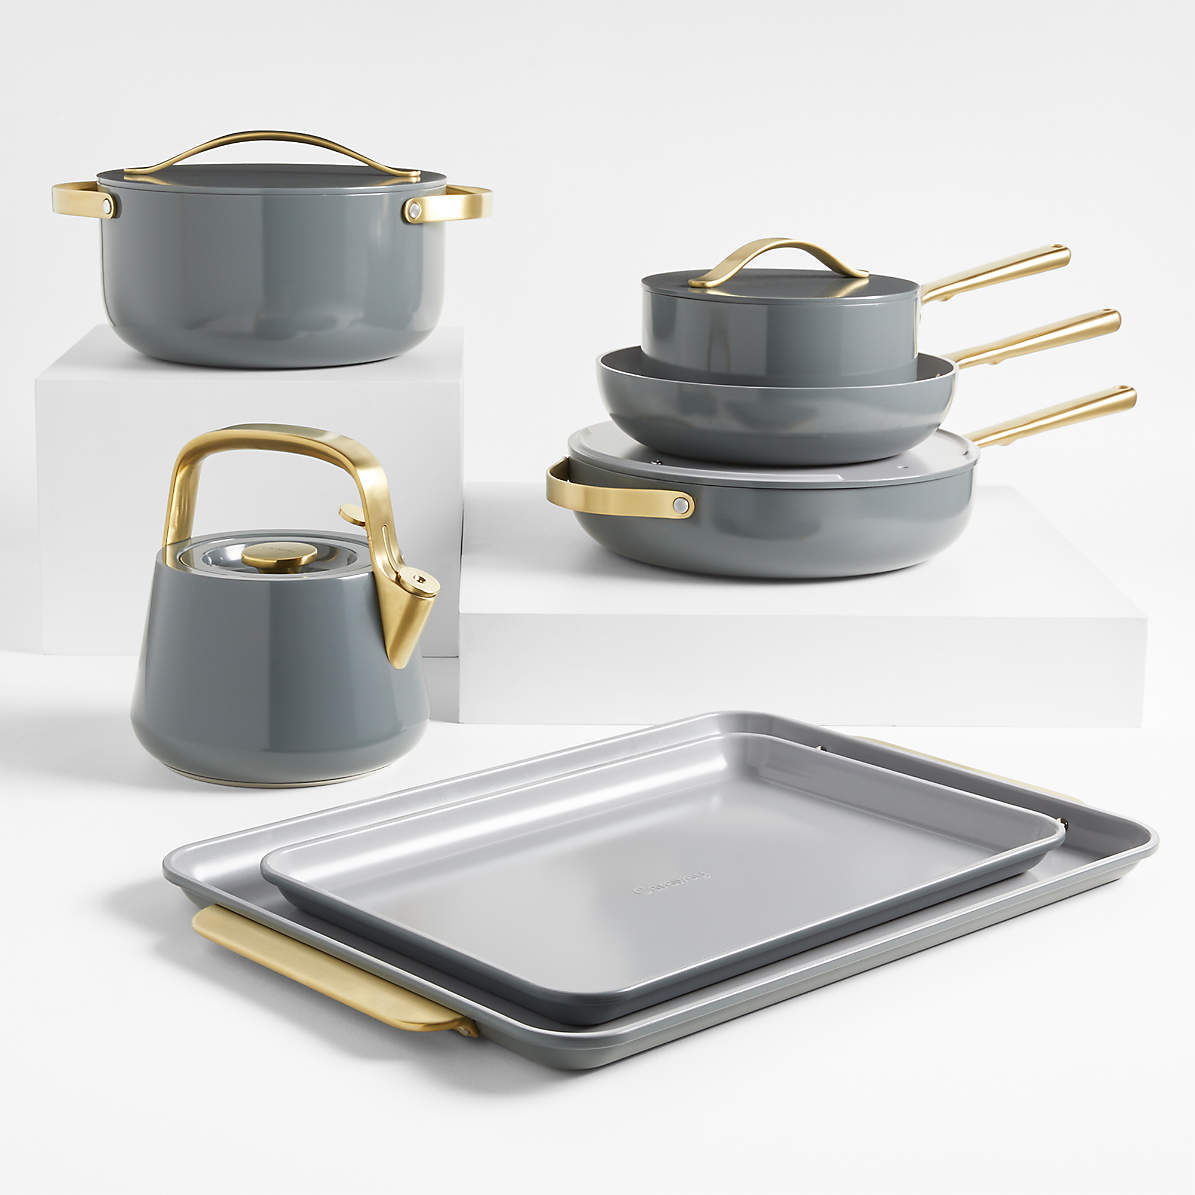 Caraway Deluxe Cookware Set in Gray